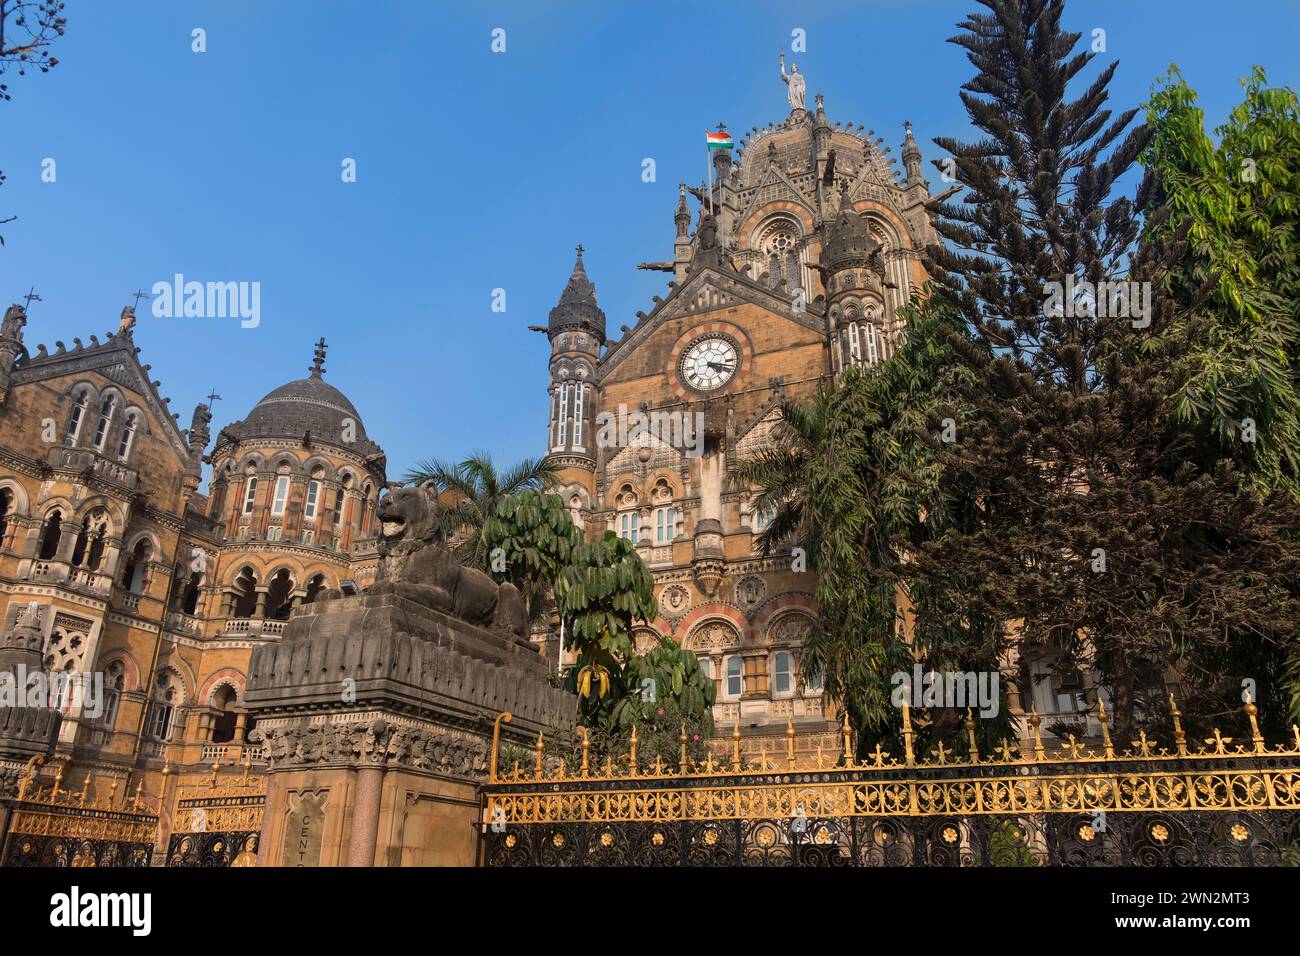 Chhatrapati Shivaji Terminus railway station Victoria Terminus Mumbai Bombay Maharashtra India Stock Photo